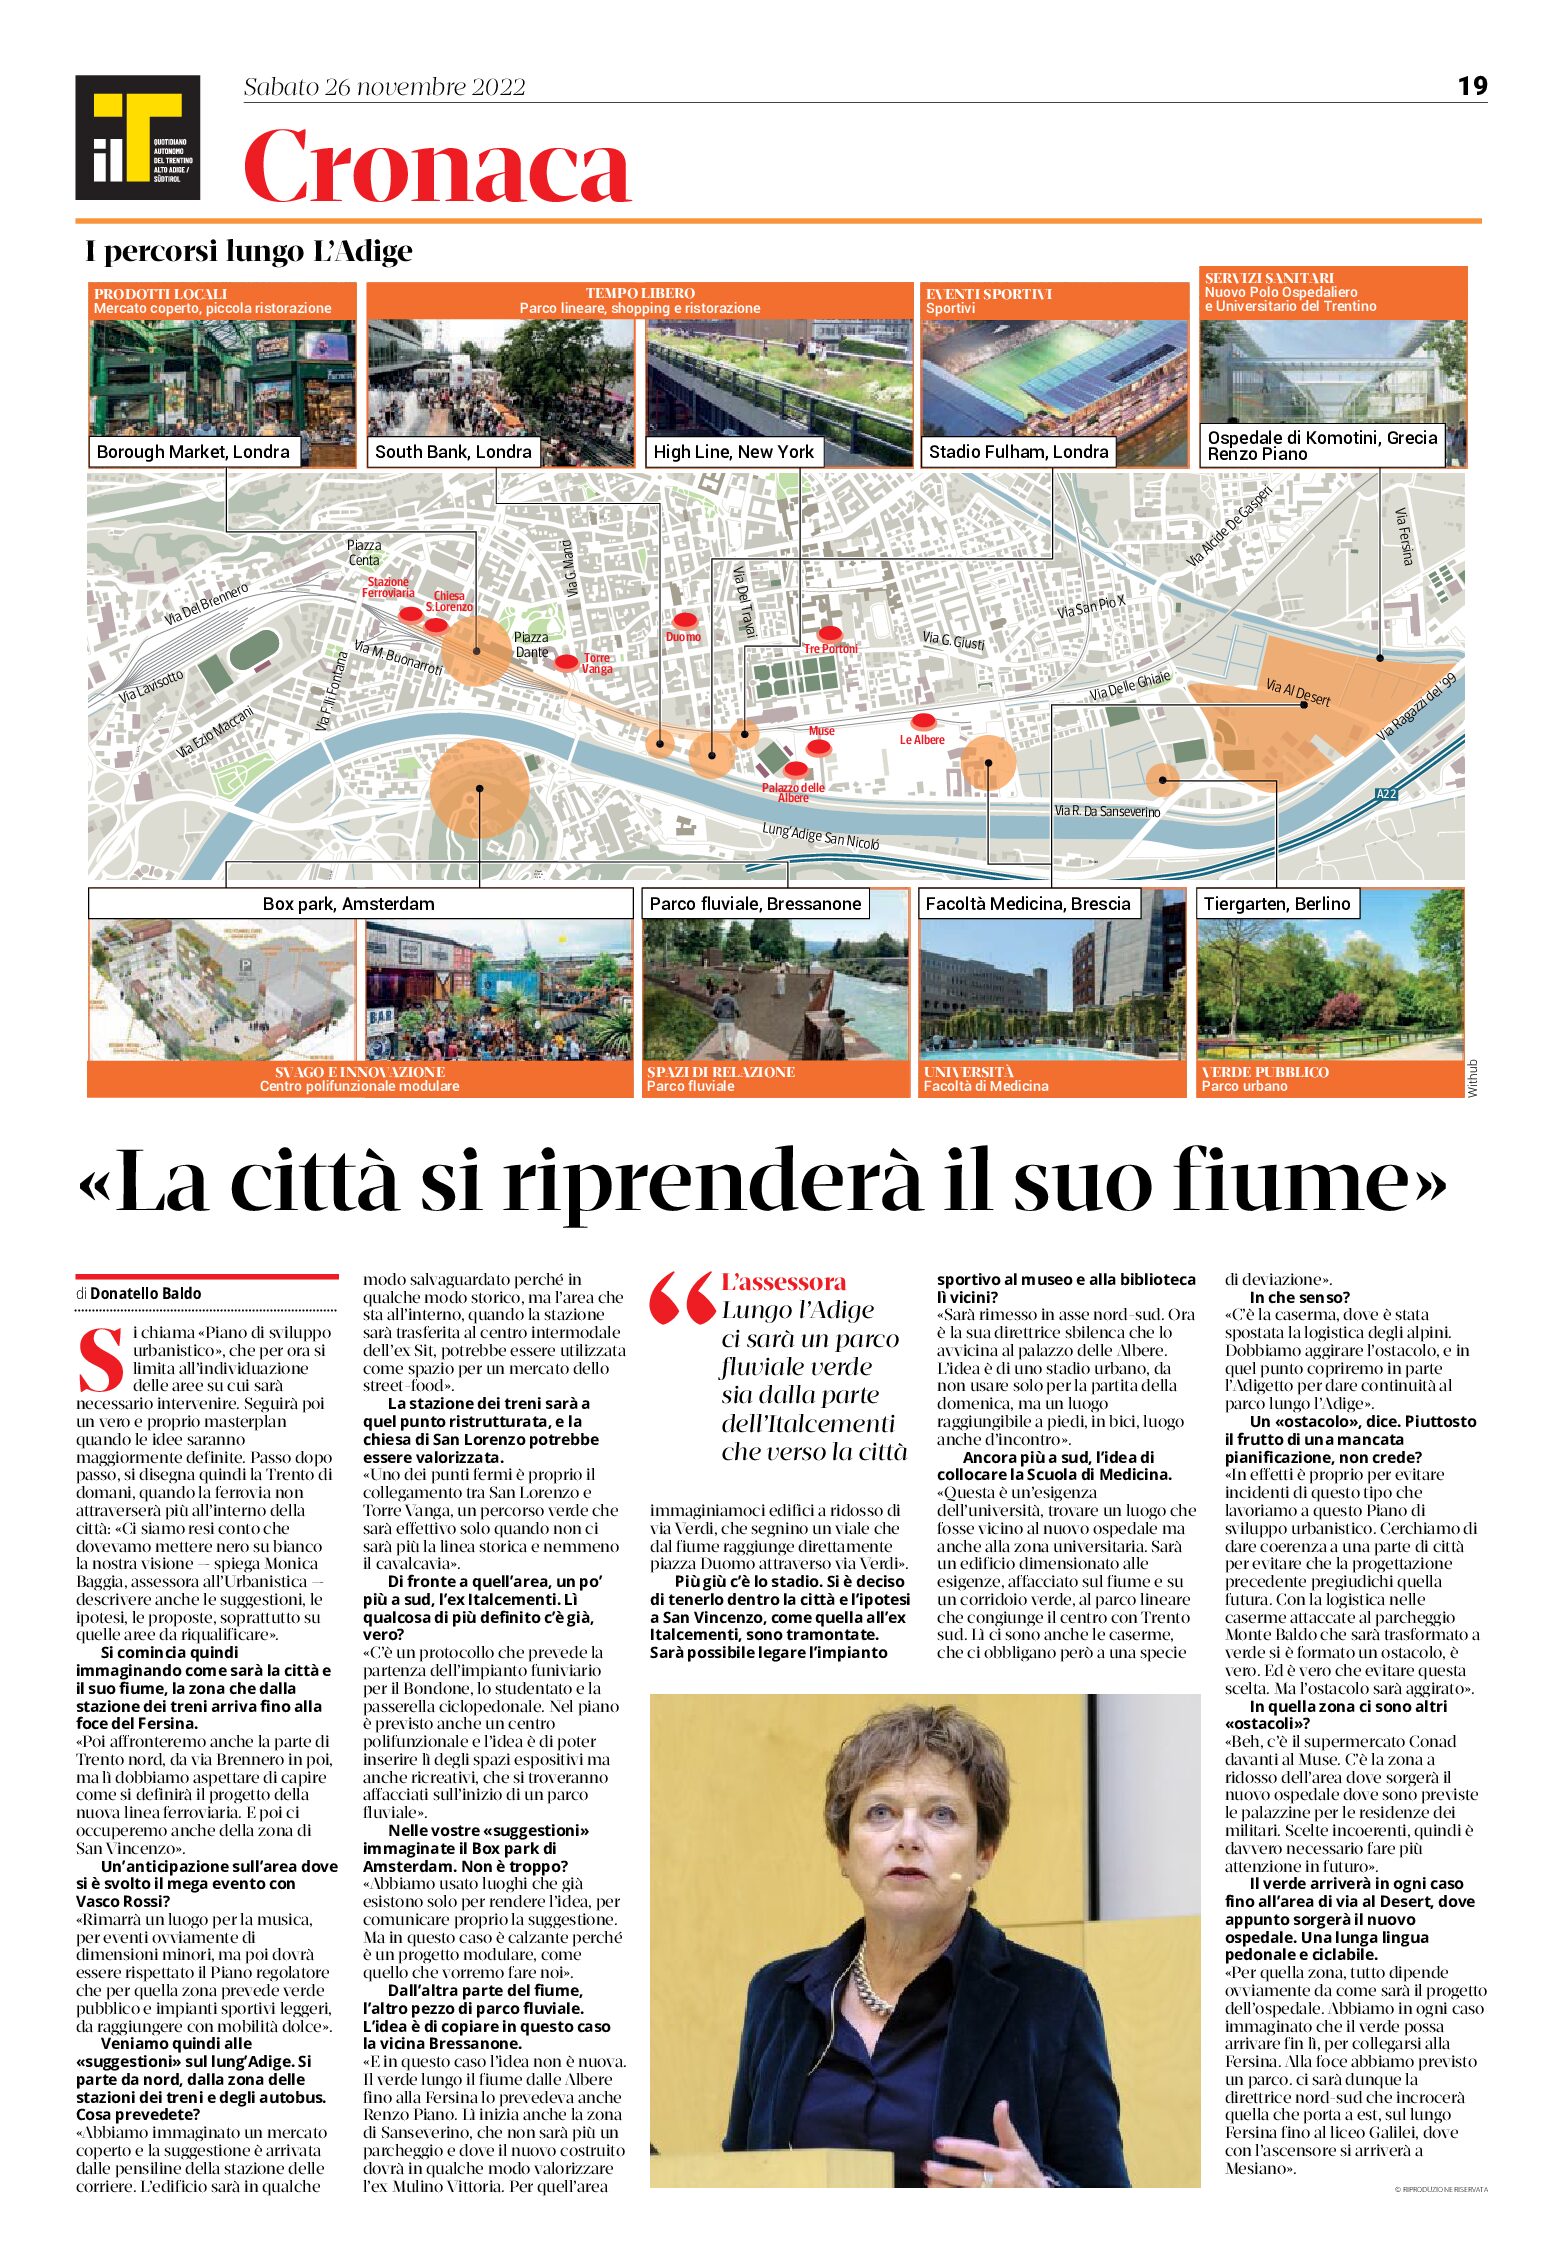 Trento: la città si riprenderà il suo fiume. Intervista a Baggia